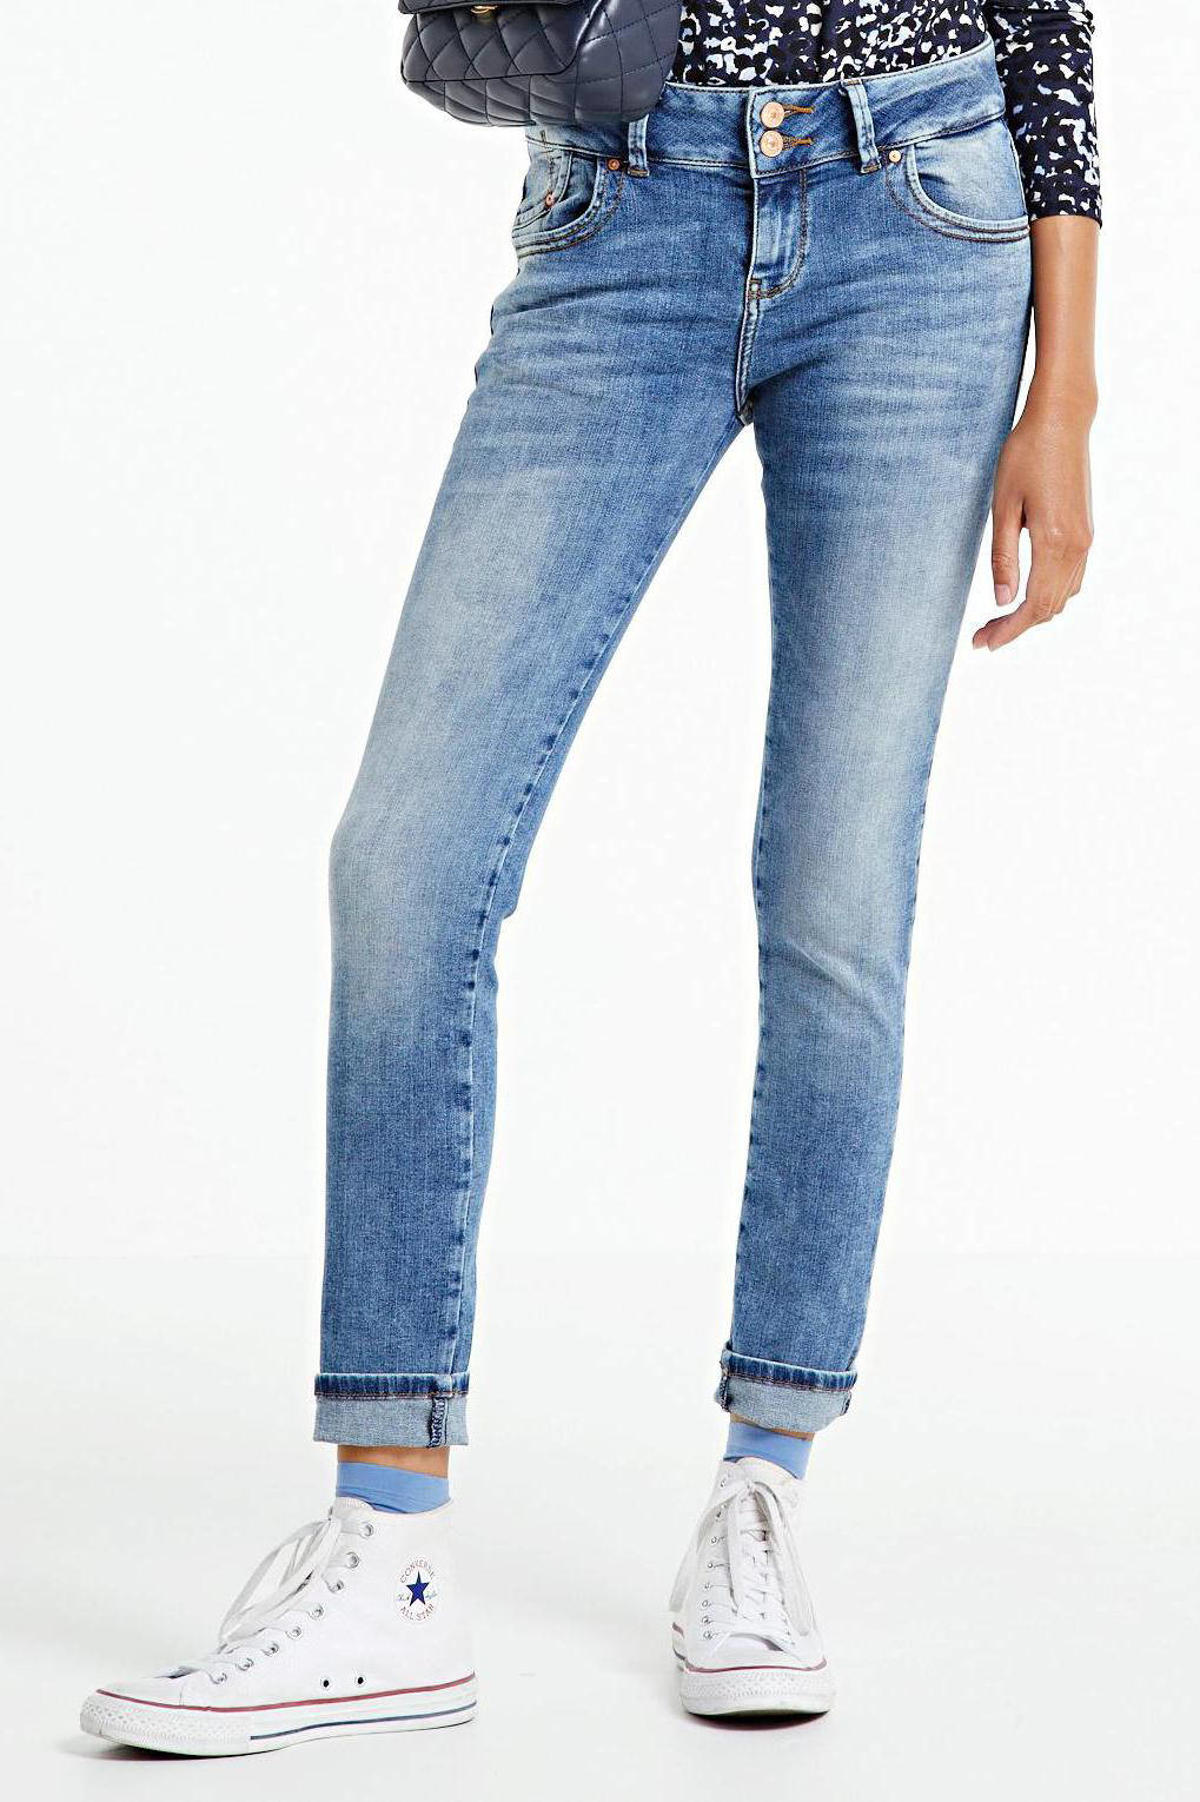 Merchandiser Gewaad Mediaan LTB slim fit jeans Molly M yule wash | wehkamp